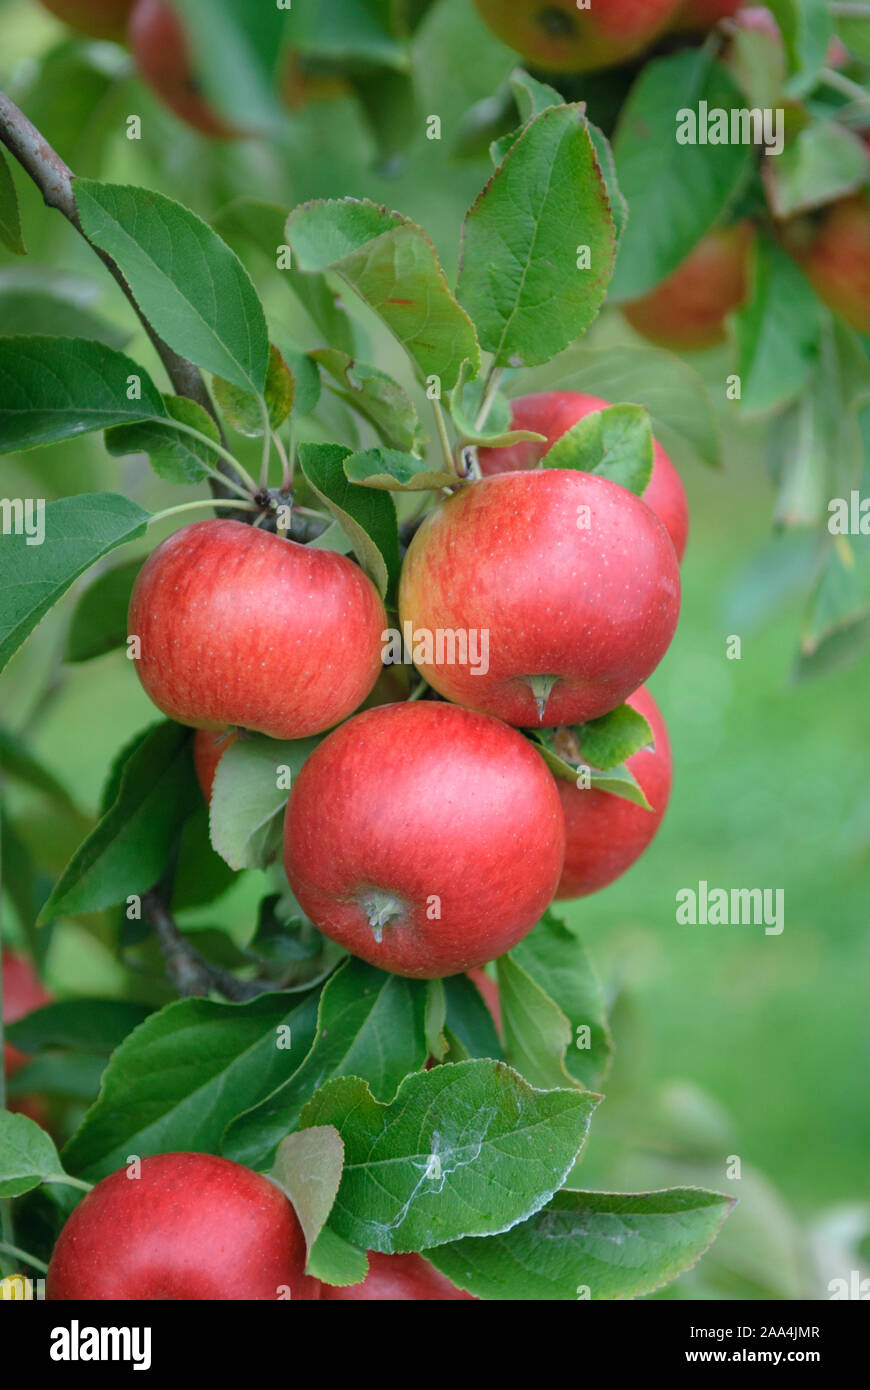 Apfel (Malus domestica 'Topaz' Stock Photo - Alamy